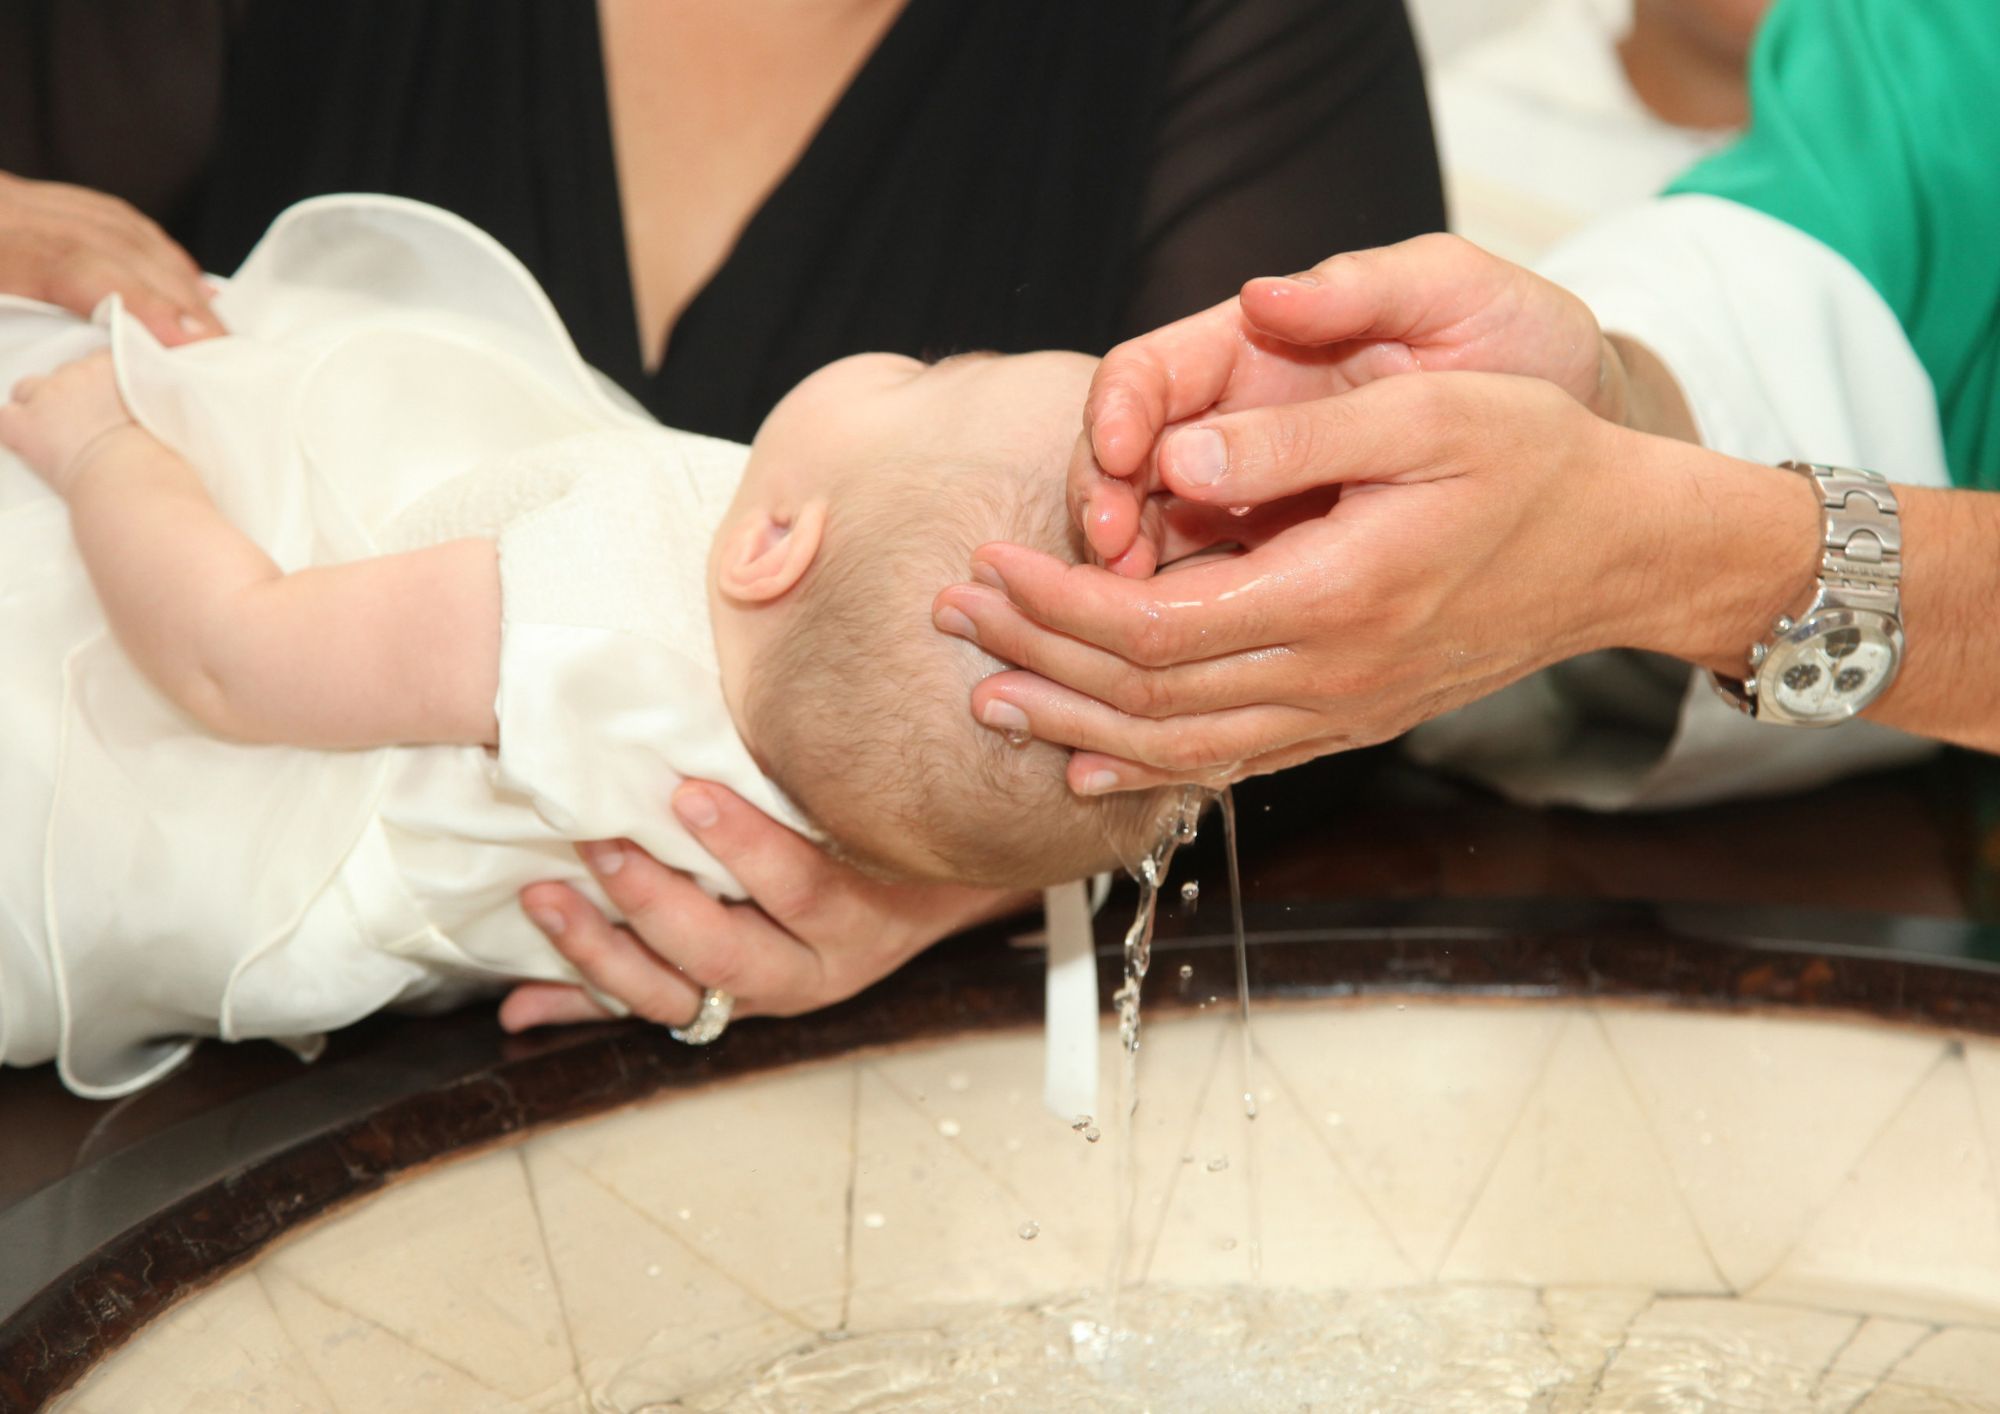 Billede af en baby som bliver døbt, hvor præsten hælder vand fra hænderne ud over babyens hoved.